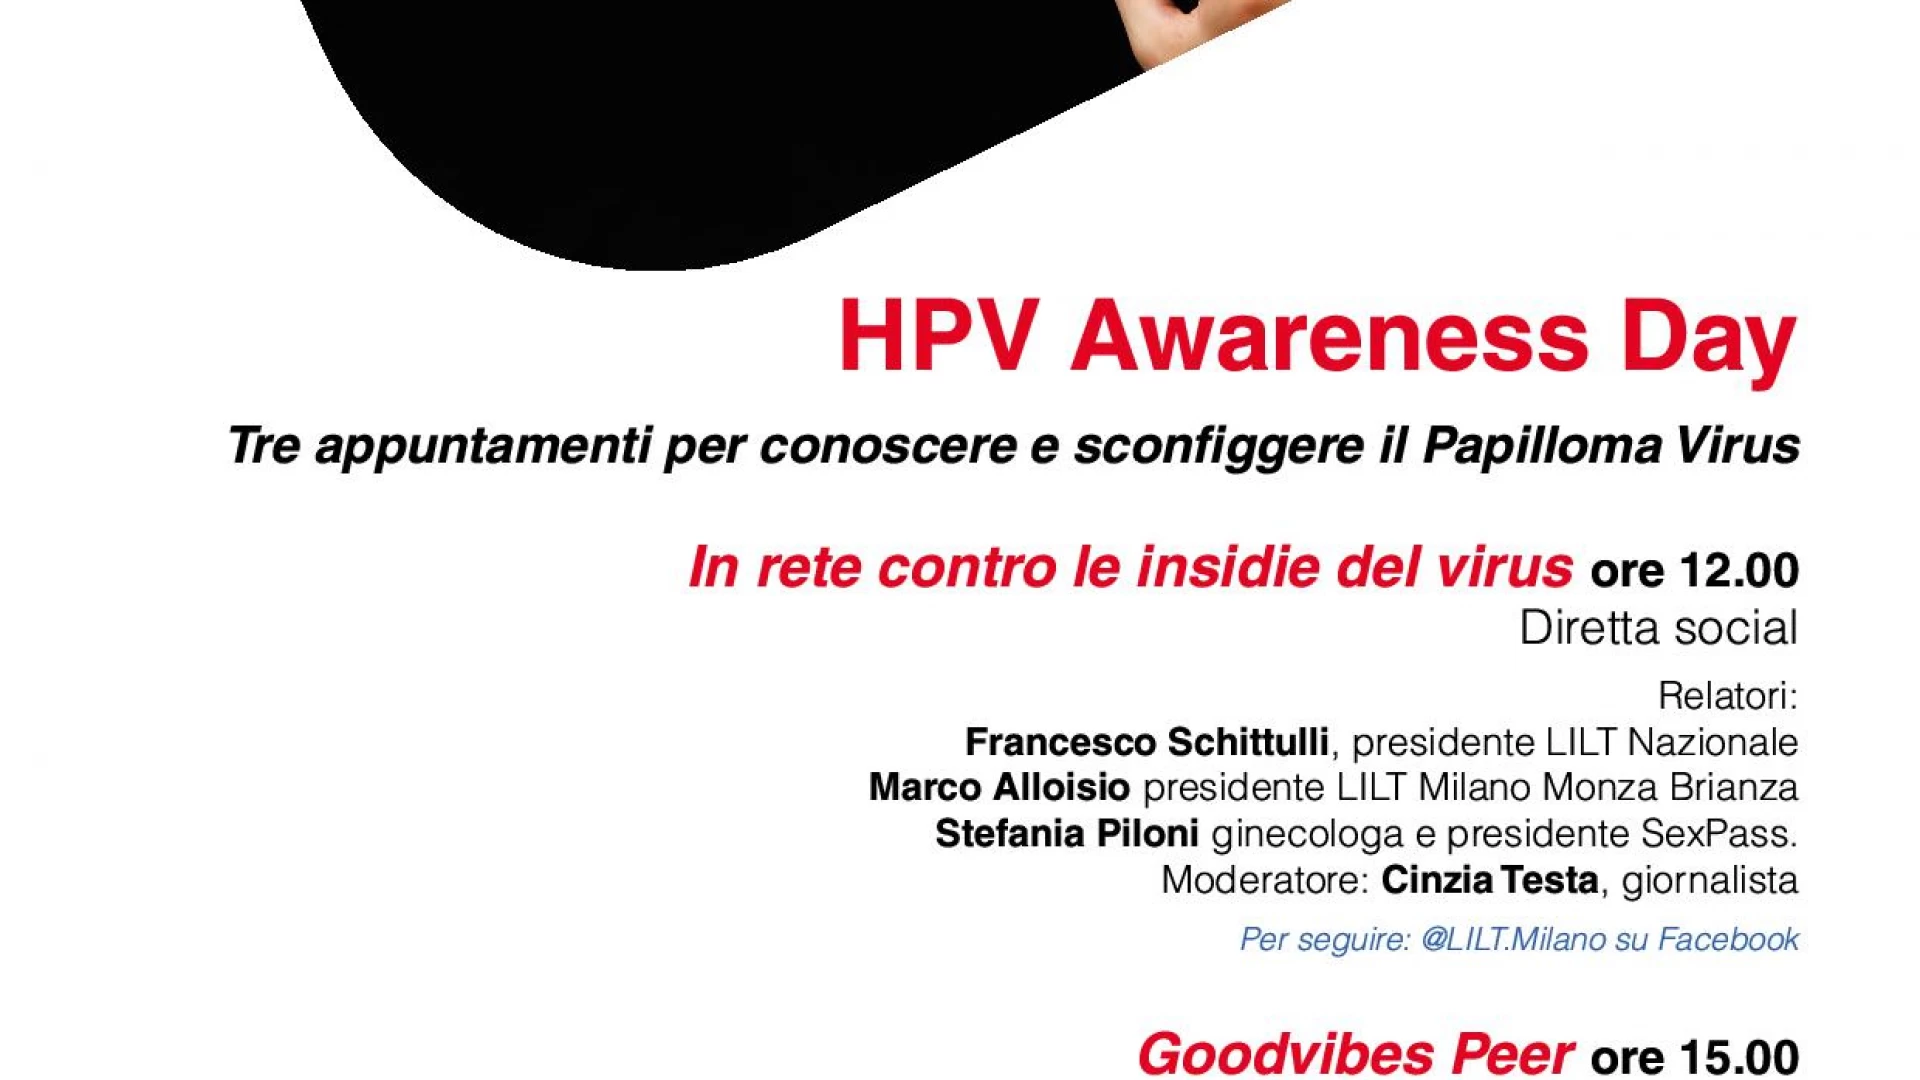 HPV Day: “Lilt Campobasso partner del progetto 50 sfumature di prevenzione”.